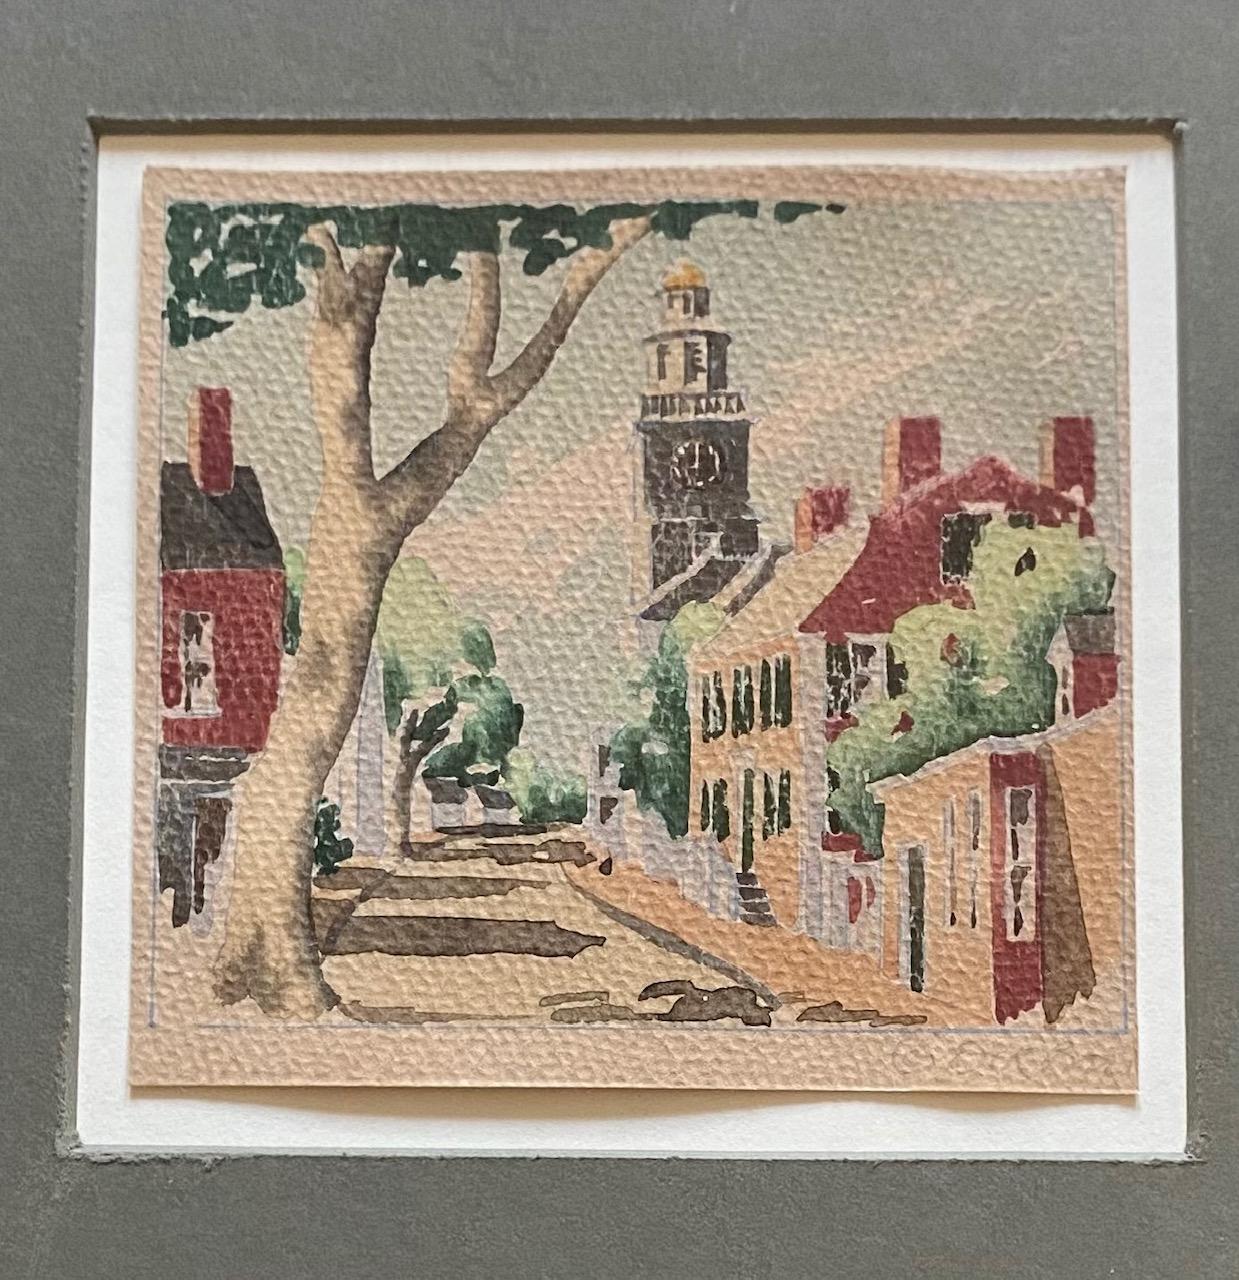 Vintage Nantucket orange street watercolor by Doris & Richard Beer, circa 1940, une aquarelle sur papier vue d'orange street, signée au crayon à droite. Doris et Richard Beer (respectivement 1898-1967 et 1893-1959) ont produit une série bien connue